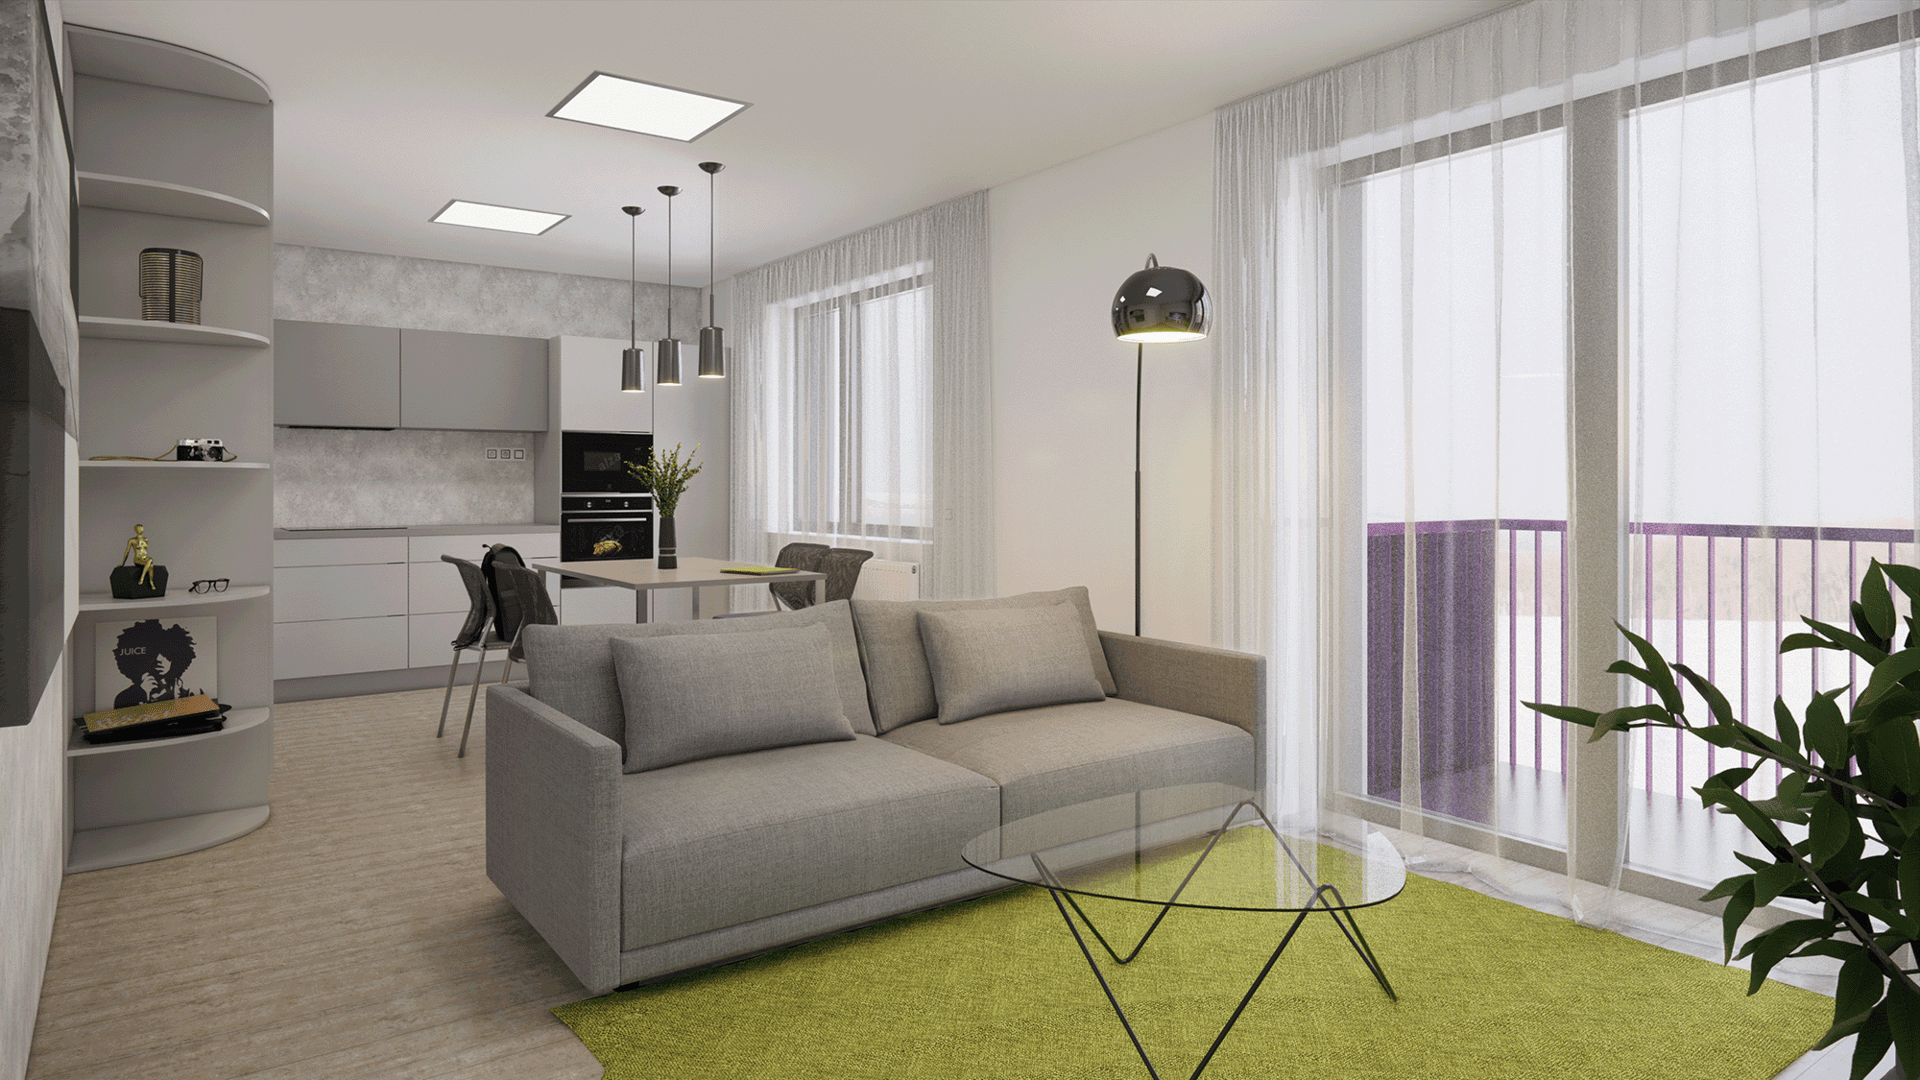 vizualizace bílého moderního bytového domu s barevnými balkóny